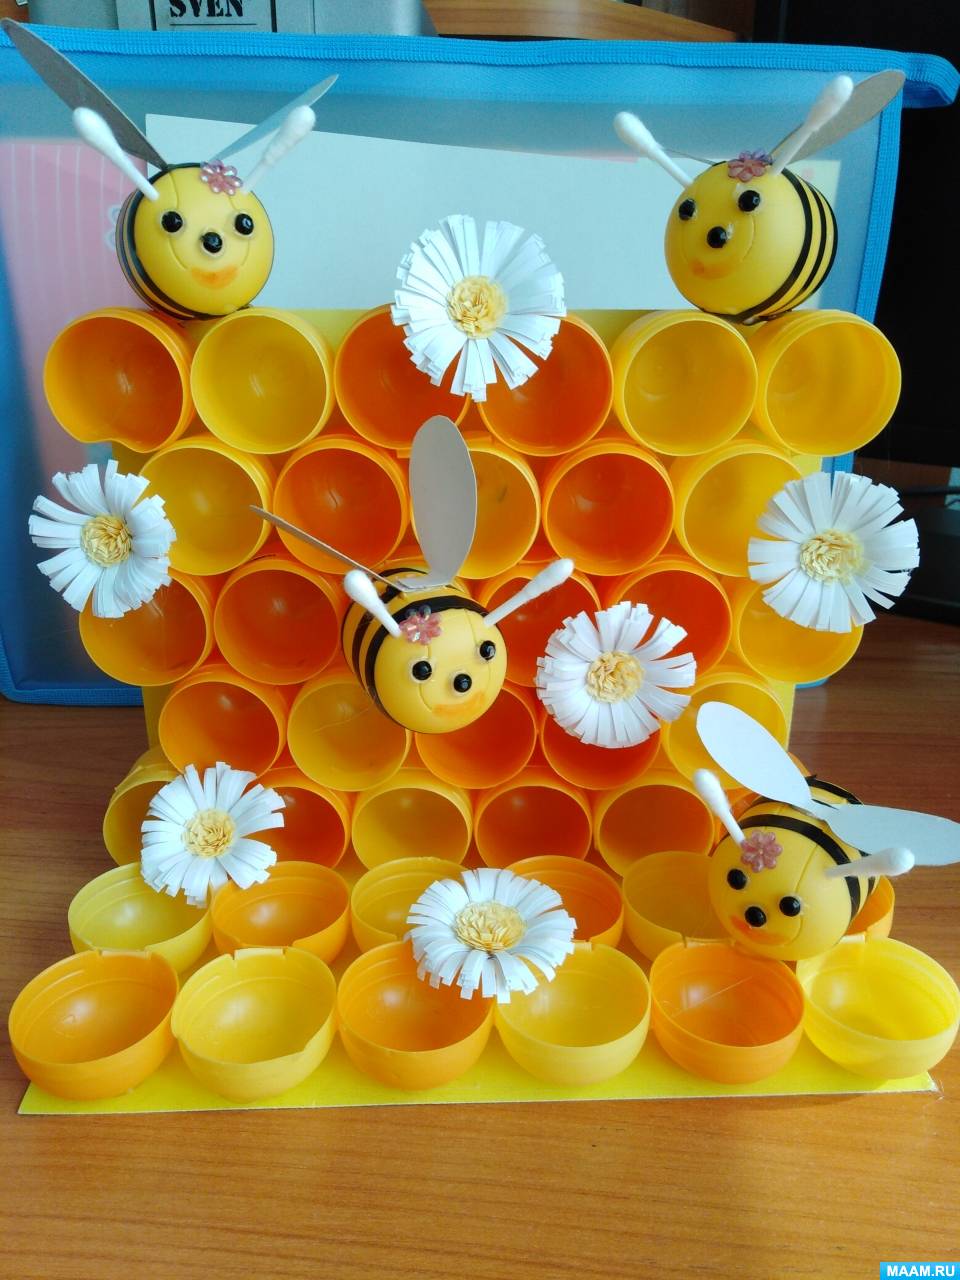 Мастер-класс по изготовлению поделки с использованием контейнеров от киндер-сюрпризов «Пчелы в сотах»